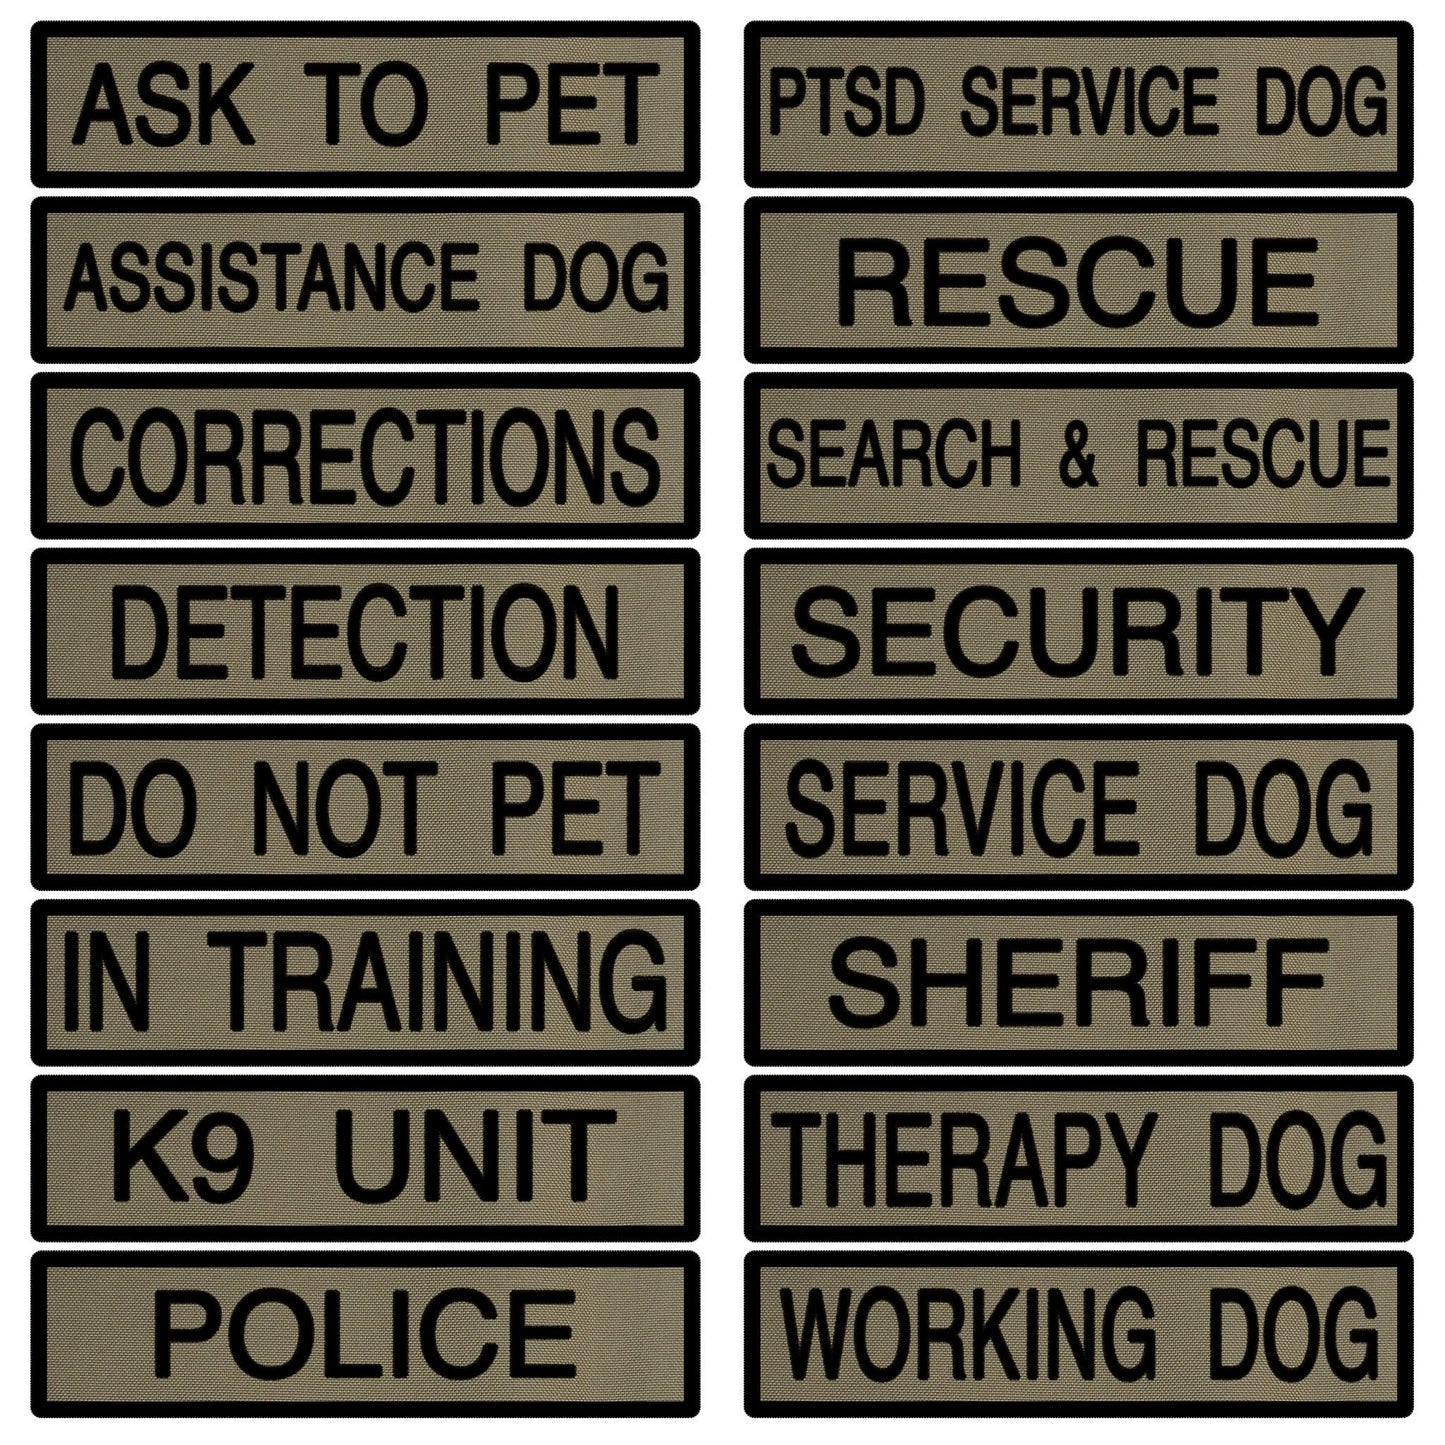 Service Dog Vest Patch  Service Dog full Color Patch